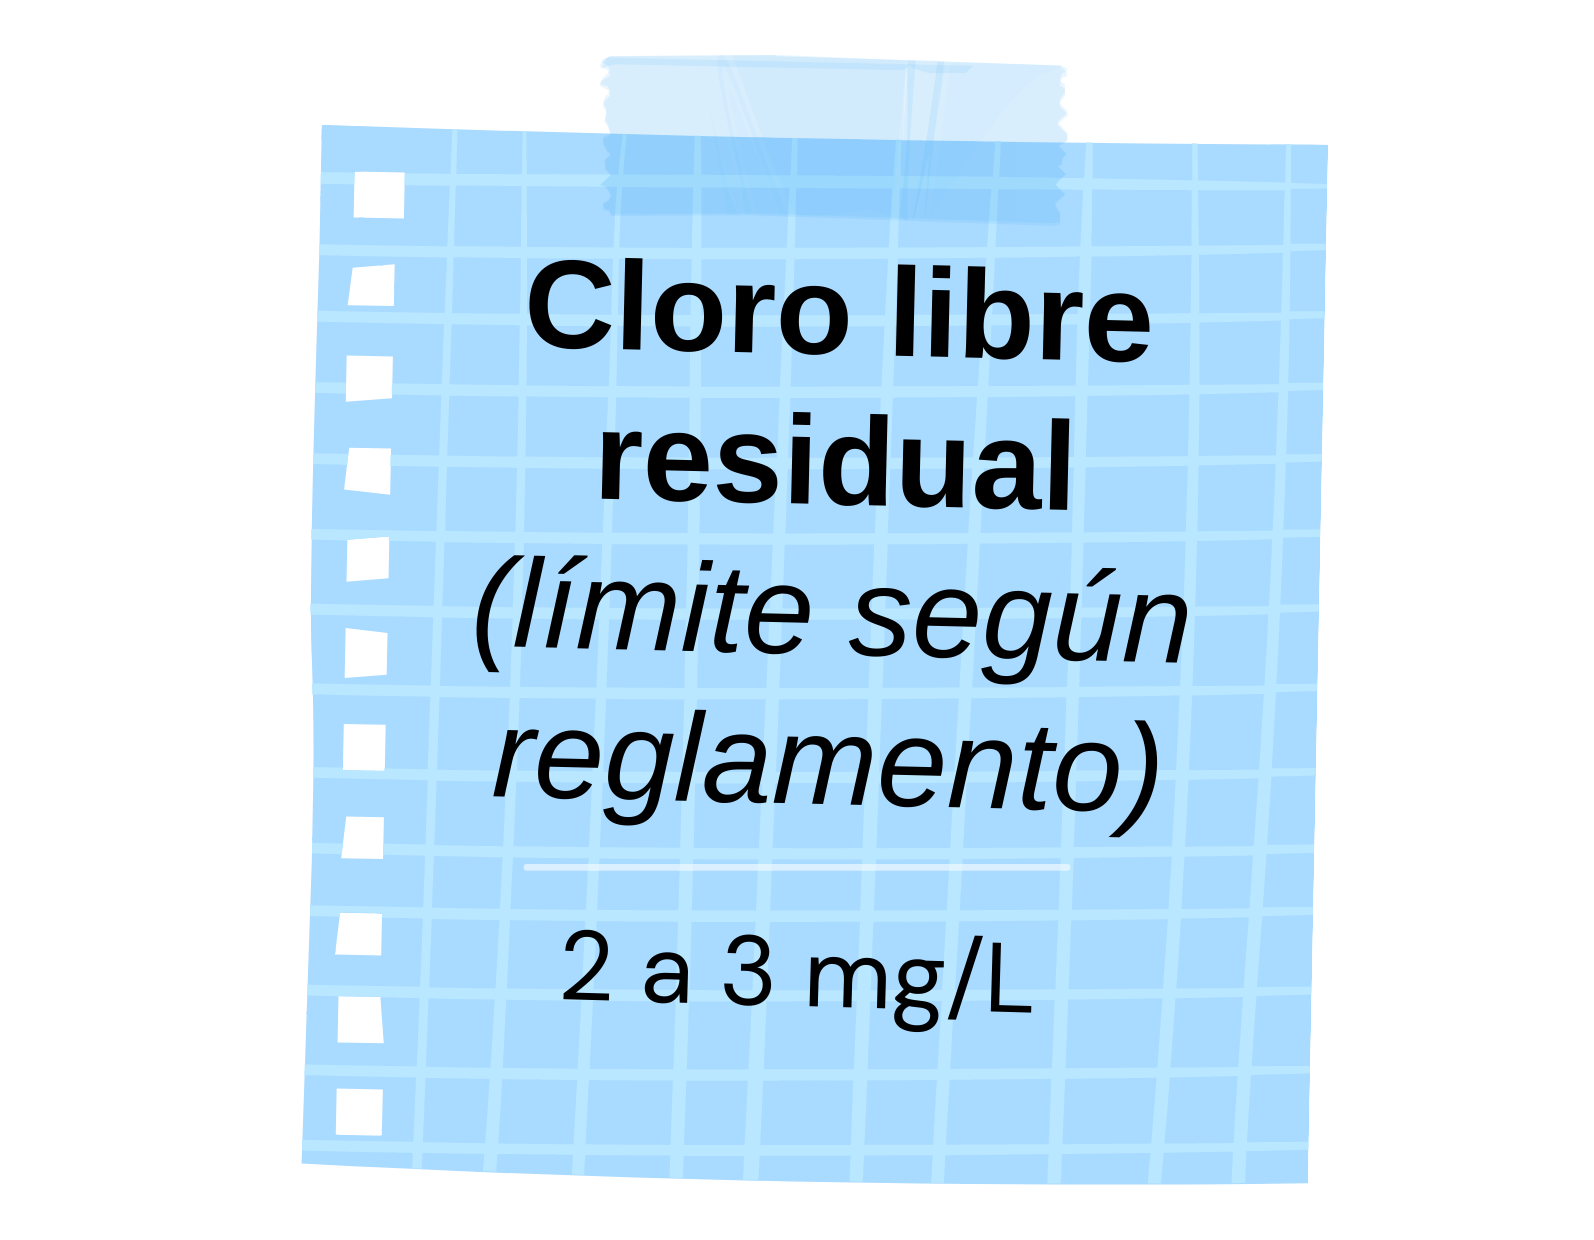 Según el Reglamento de Manejo de Piscinas se debe encontrar entre 2 a 3 mg de cloro libre residual por cada litro de agua